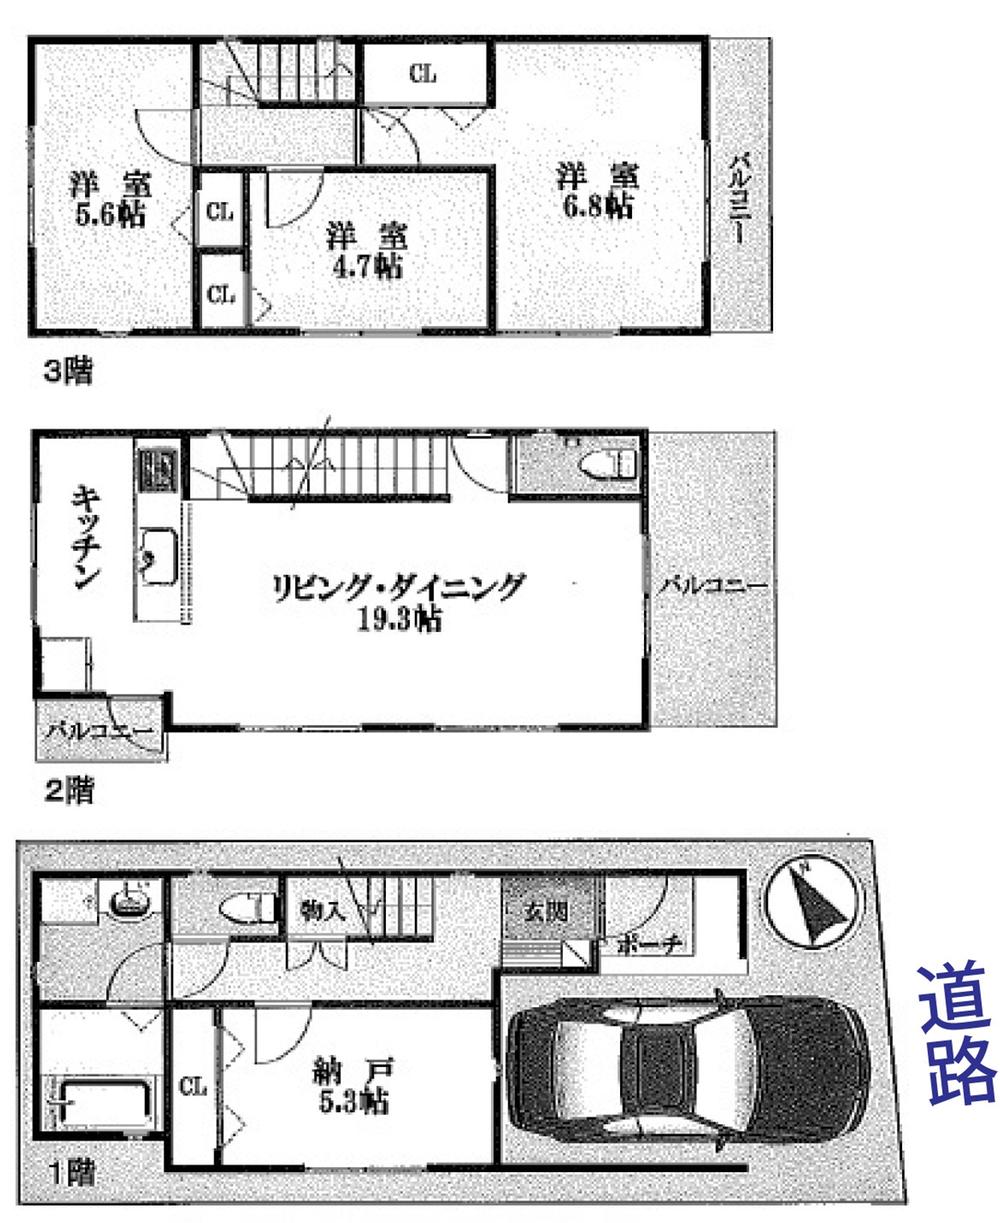 Floor plan. 37,800,000 yen, 3LDK + S (storeroom), Land area 65.44 sq m , Building area 108.27 sq m